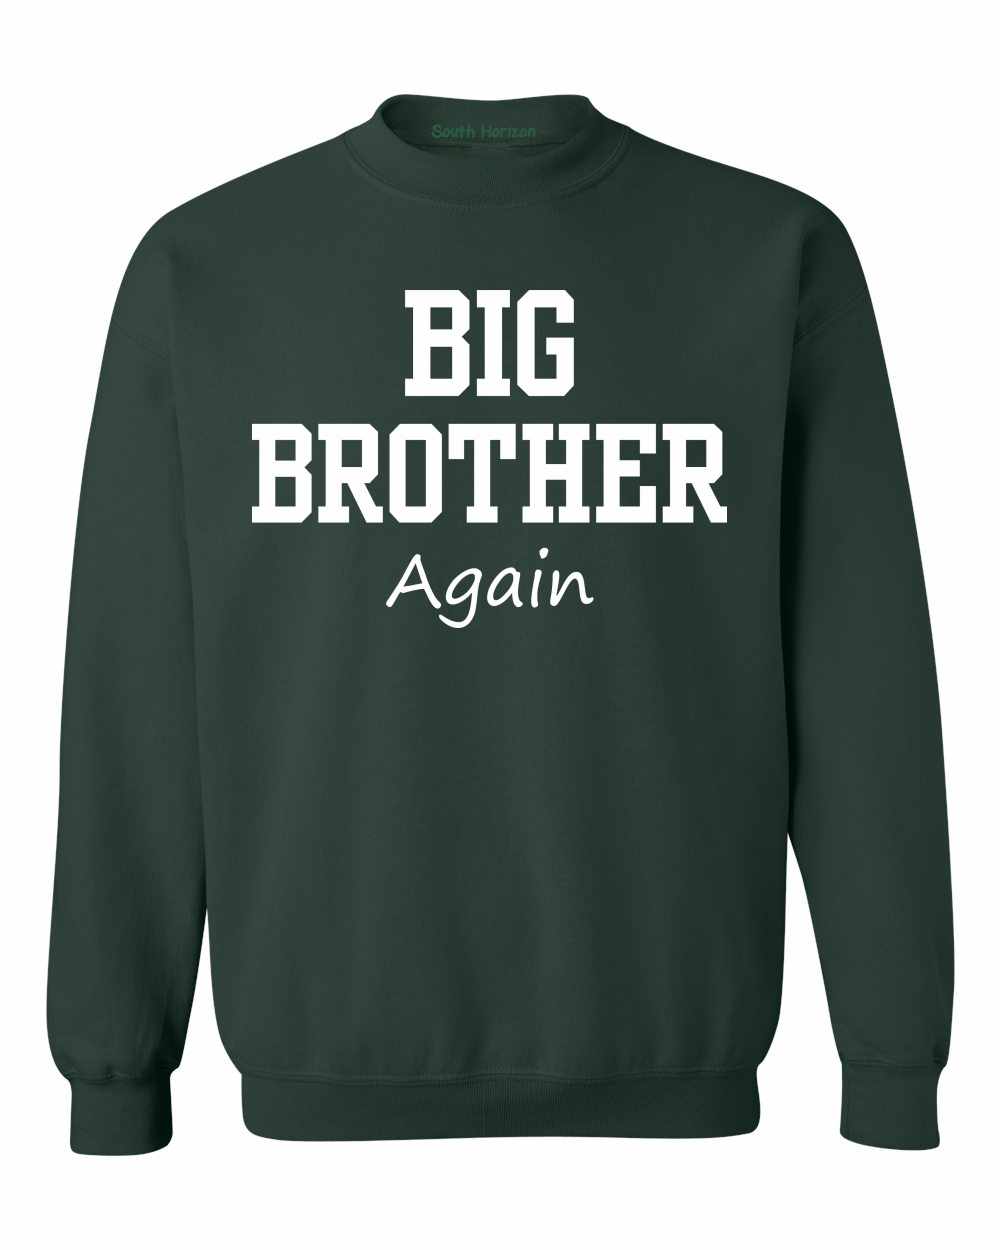 Big Brother Again on SweatShirt (#1133-11)